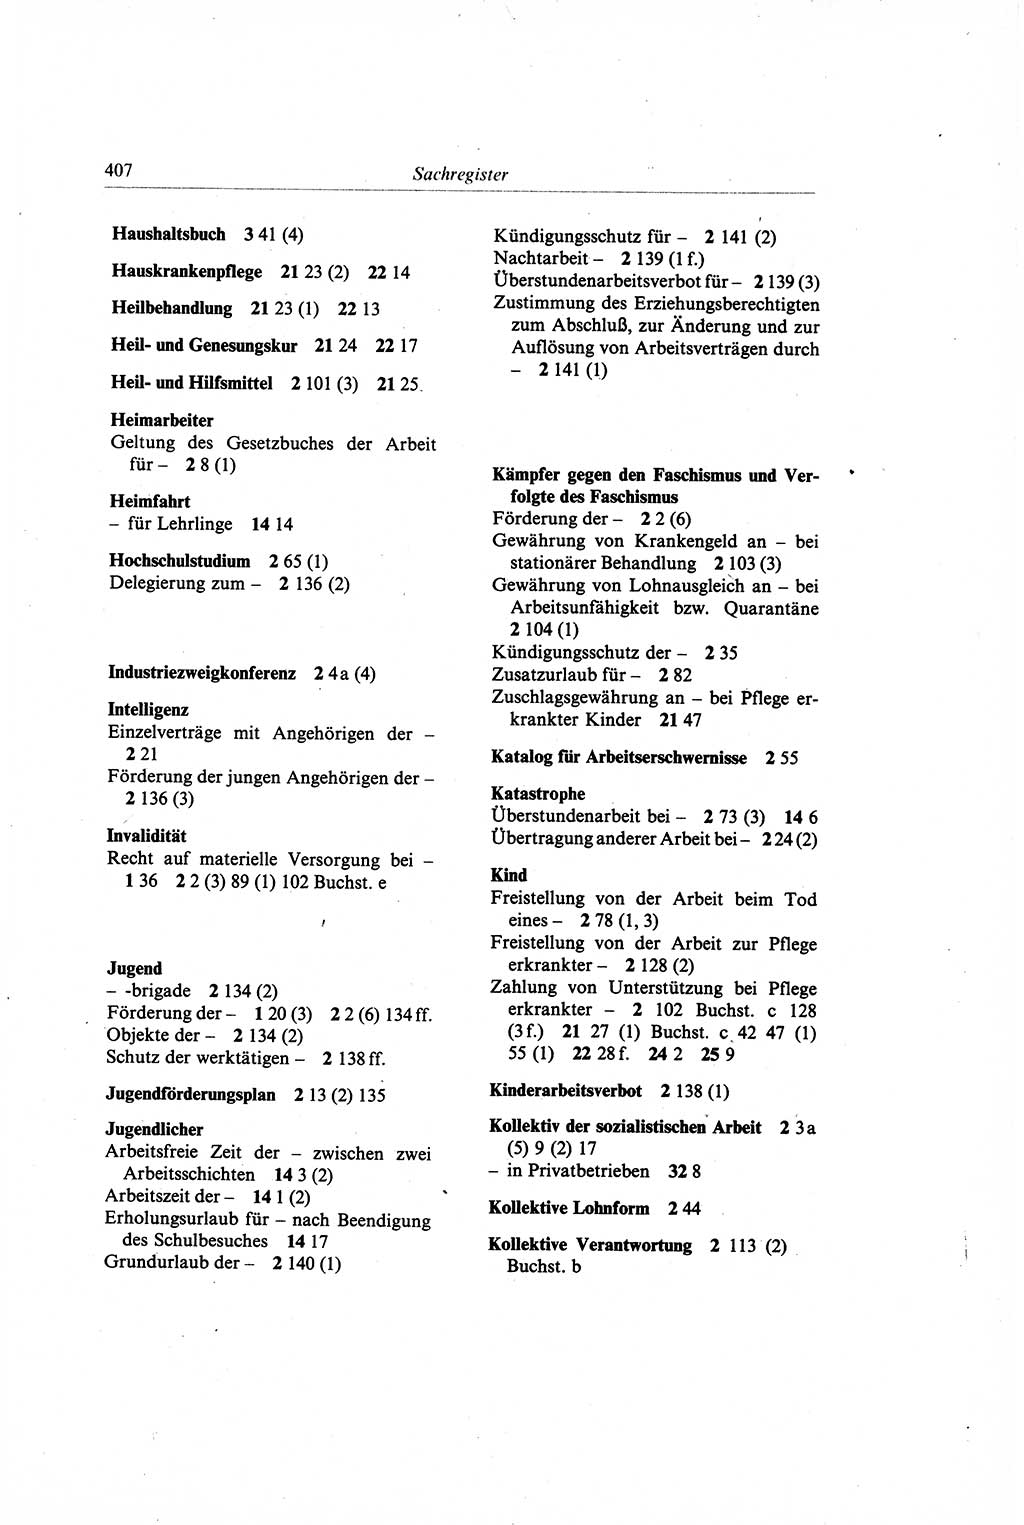 Gesetzbuch der Arbeit (GBA) und andere ausgewählte rechtliche Bestimmungen [Deutsche Demokratische Republik (DDR)] 1968, Seite 407 (GBA DDR 1968, S. 407)